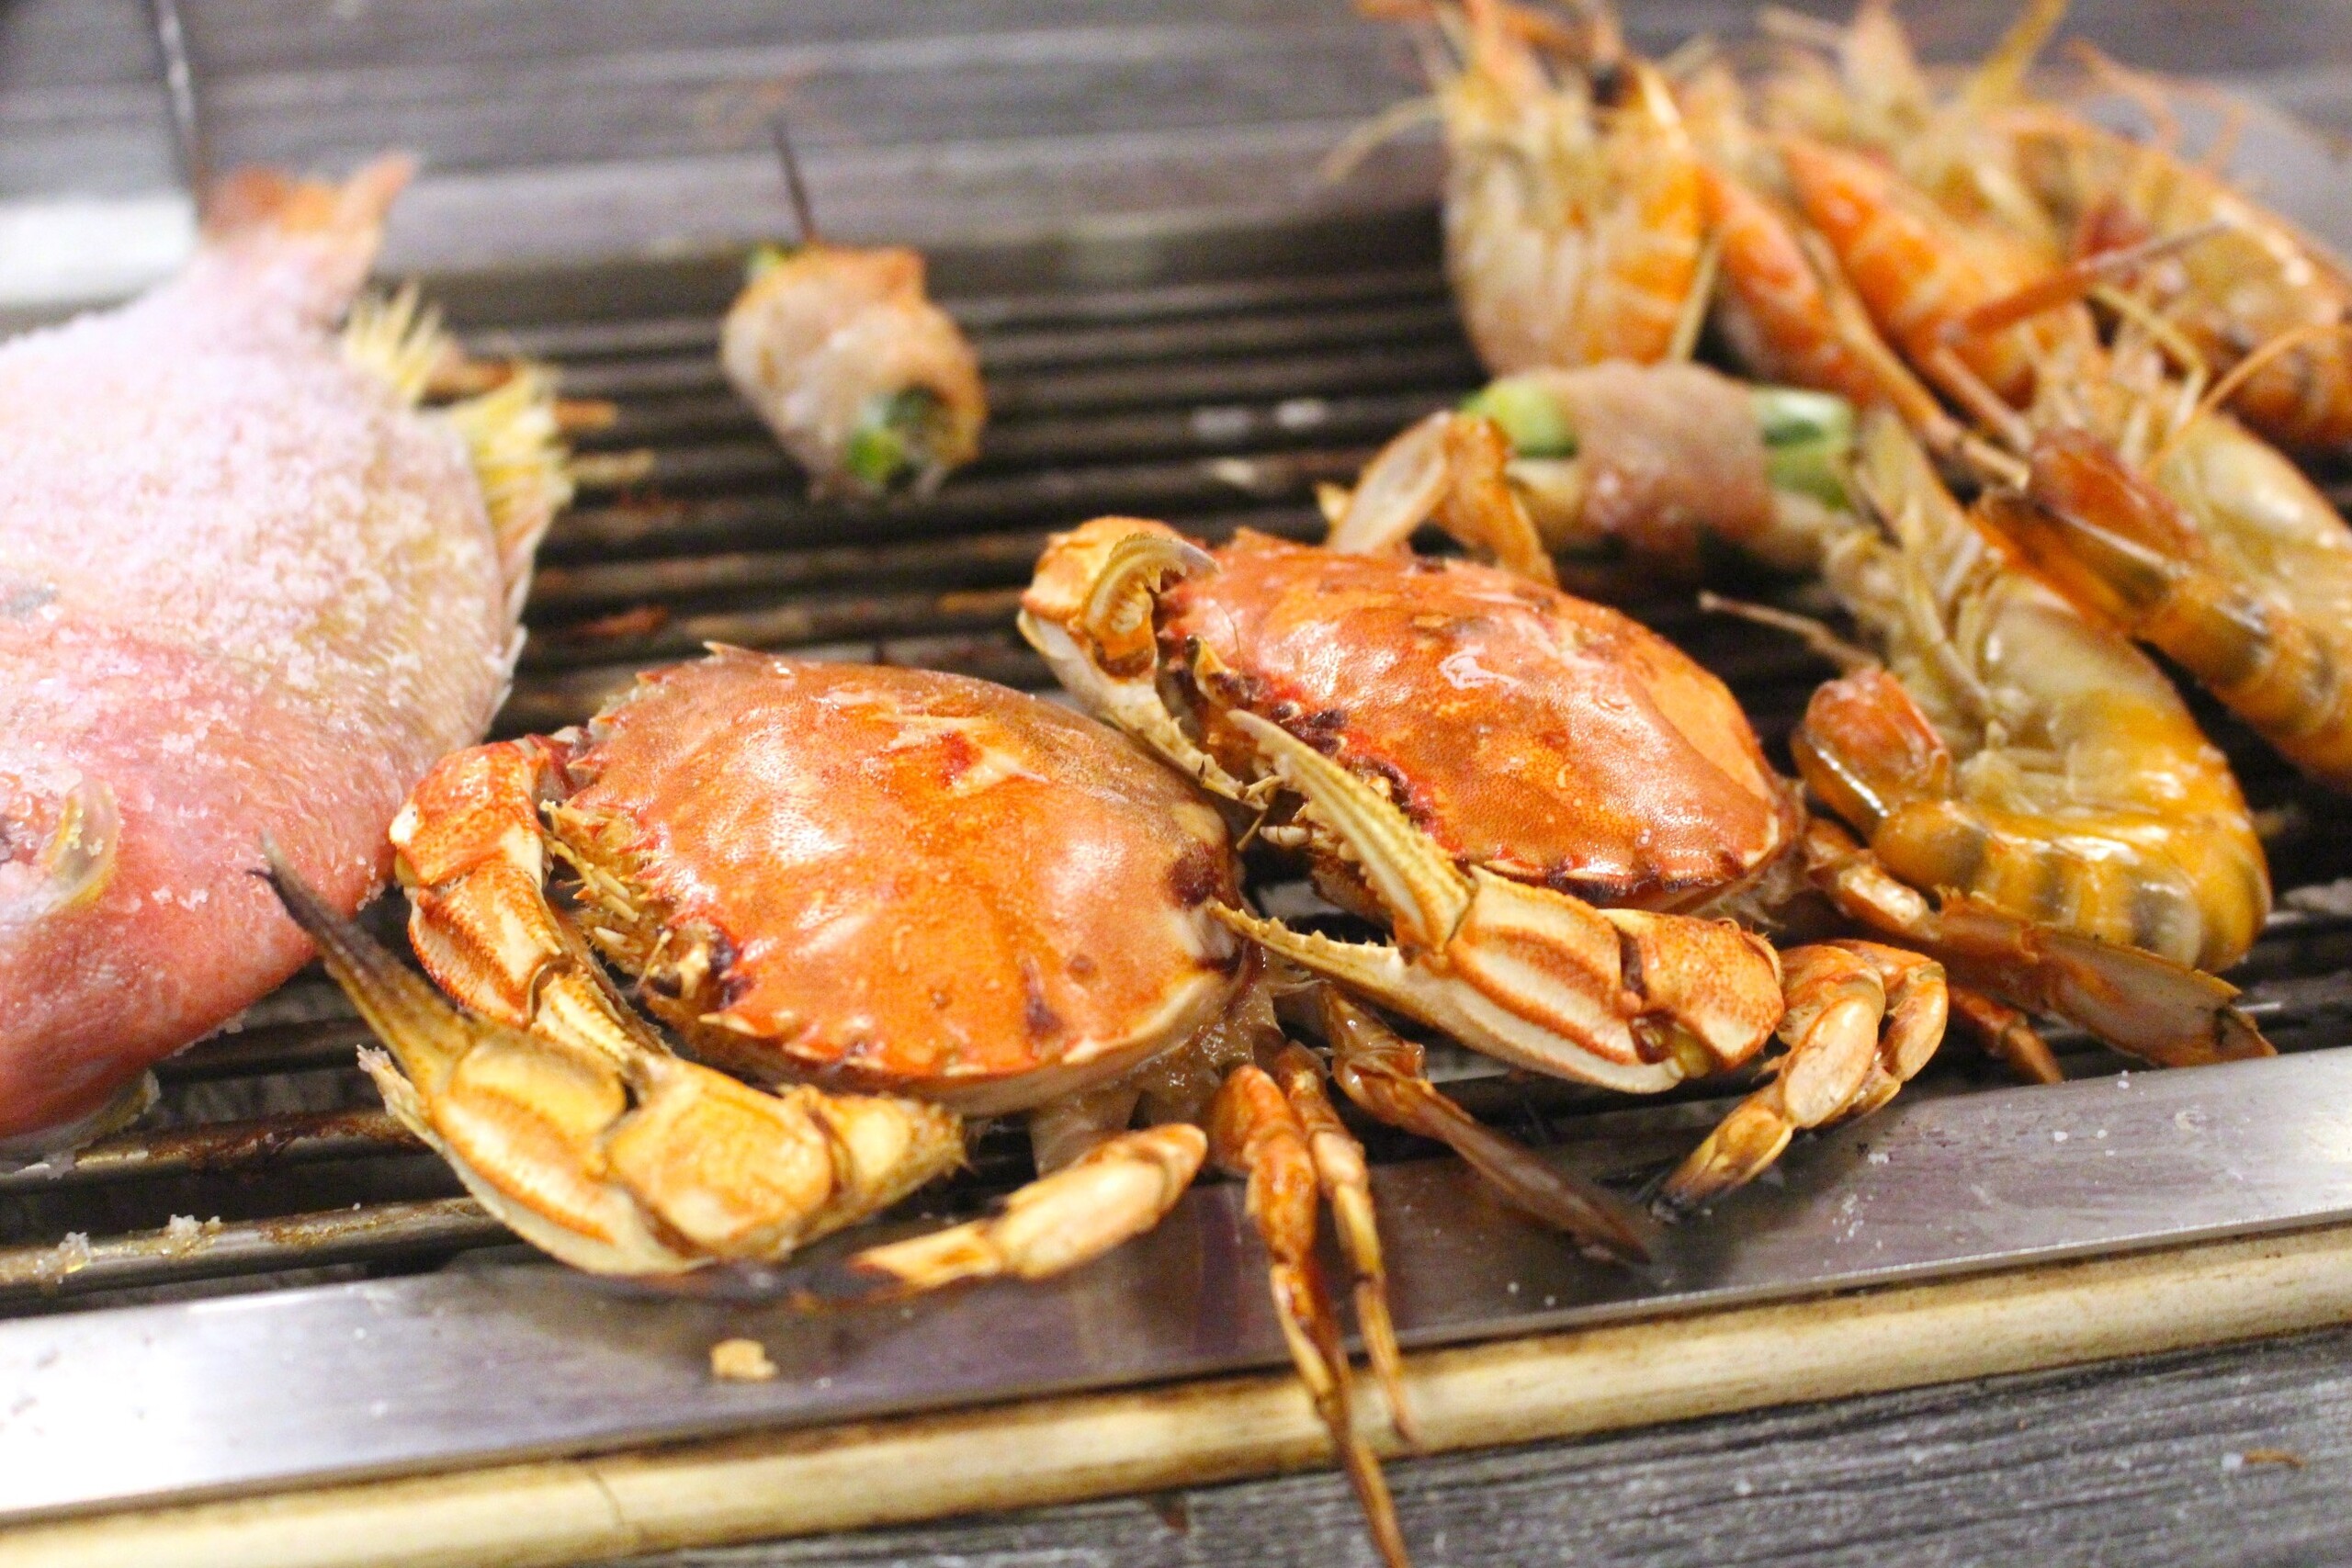 【桃園 海寶城】新增現撈仔「水道泰國蝦」無限吃到飽.海鮮碳烤火烤兩吃讓你吃到翻過去